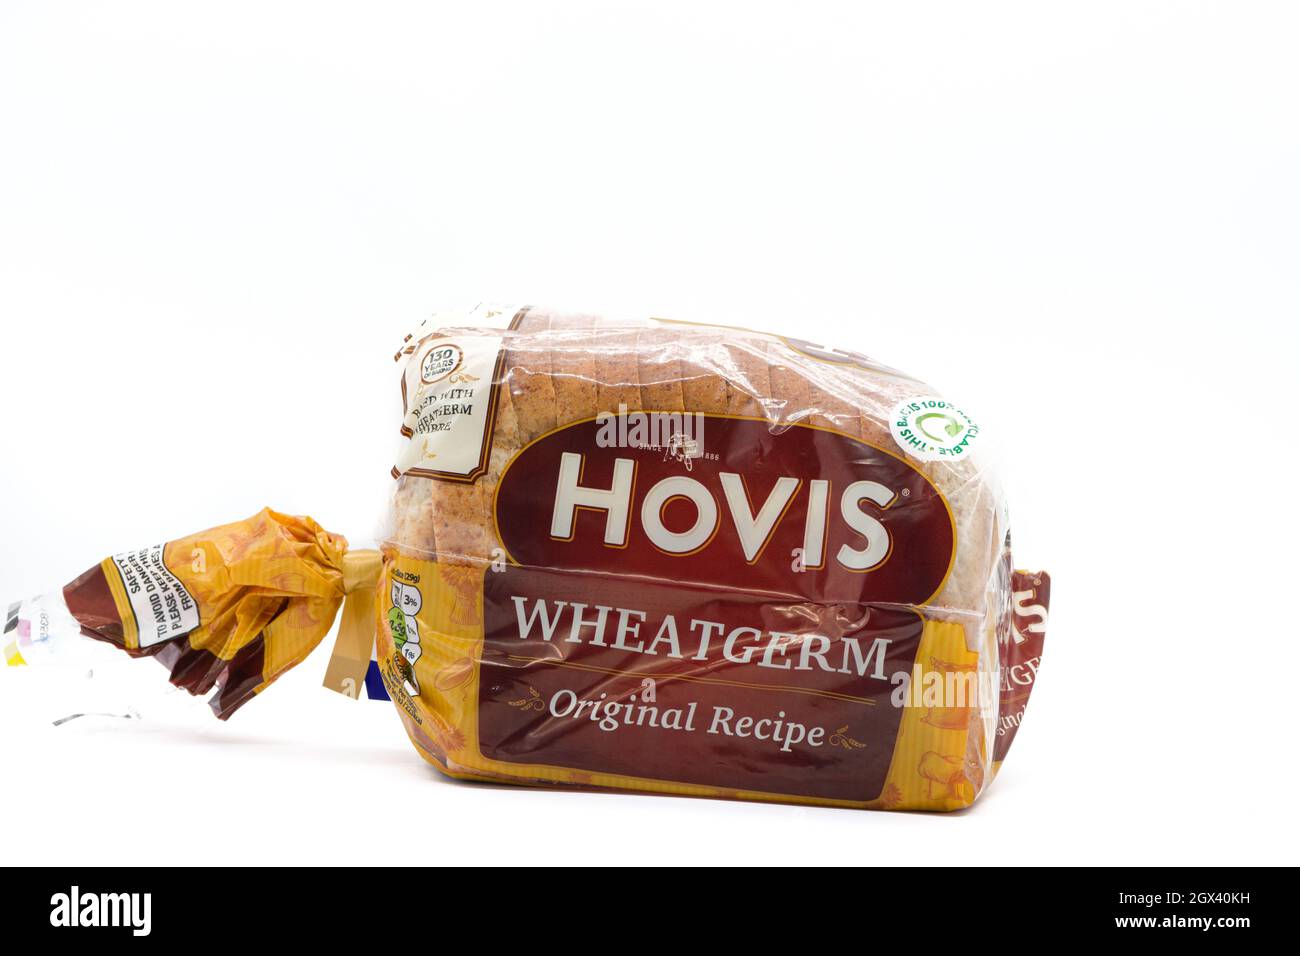 Irvine, Écosse, Royaume-Uni - 29 septembre 2021 : un pain de marque Hovis de Wheatgerm brun dans un emballage en plastique qui peut être retourné à la plupart des supermar Banque D'Images